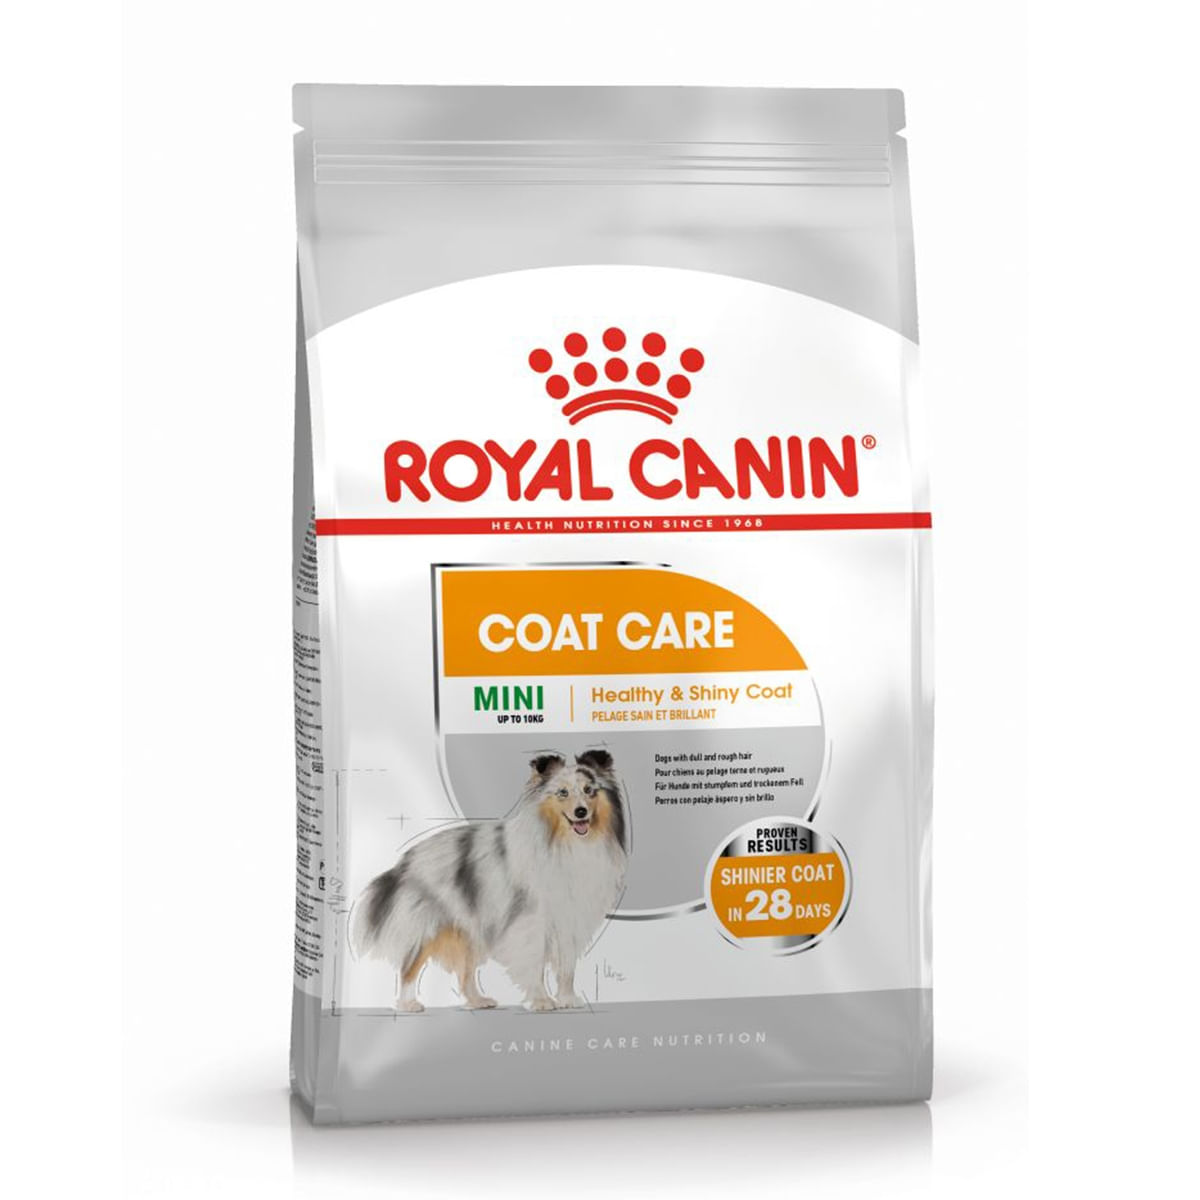 Royal Canin Coat Care Adult, hrană umedă câini, blană sănătoasă și lucioasă, (pate) Royal Canin Coat Care Adult, bax hrană umedă câini, blană sănătoasă și lucioasă, (pate), 85g x 12